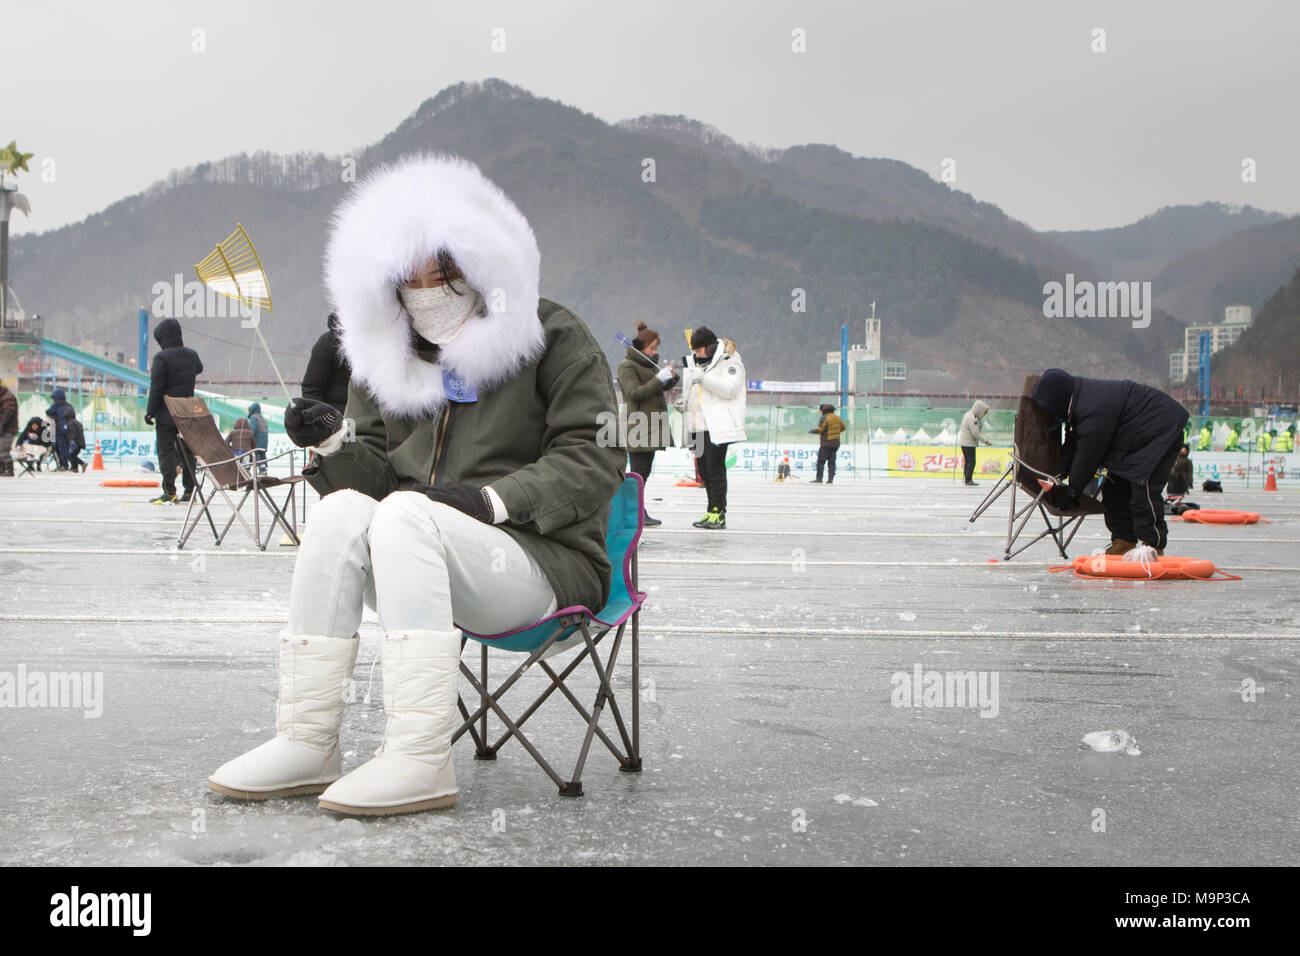 Una mujer bien abrigados en un abrigo de piel gruesa está esperando encima de un agujero en el hielo durante la pesca en el hielo en el festival de Sancheoneo Hwacheon en la región de Gangwon-do de Corea del Sur. El Festival de hielo Sancheoneo Hwacheon es una tradición para el pueblo coreano. En enero de cada año las multitudes se reúnen en el río congelado para celebrar el frío y la nieve del invierno. Su principal atractivo es la pesca sobre hielo. Jóvenes y viejos esperar pacientemente a través de un pequeño agujero en el hielo para una trucha a morder. En carpas pueden dejar el pescado a la parrilla después de que se comen. Entre otras actividades están el trineo y patinaje sobre hielo. La cercana Pyeongchang Foto de stock